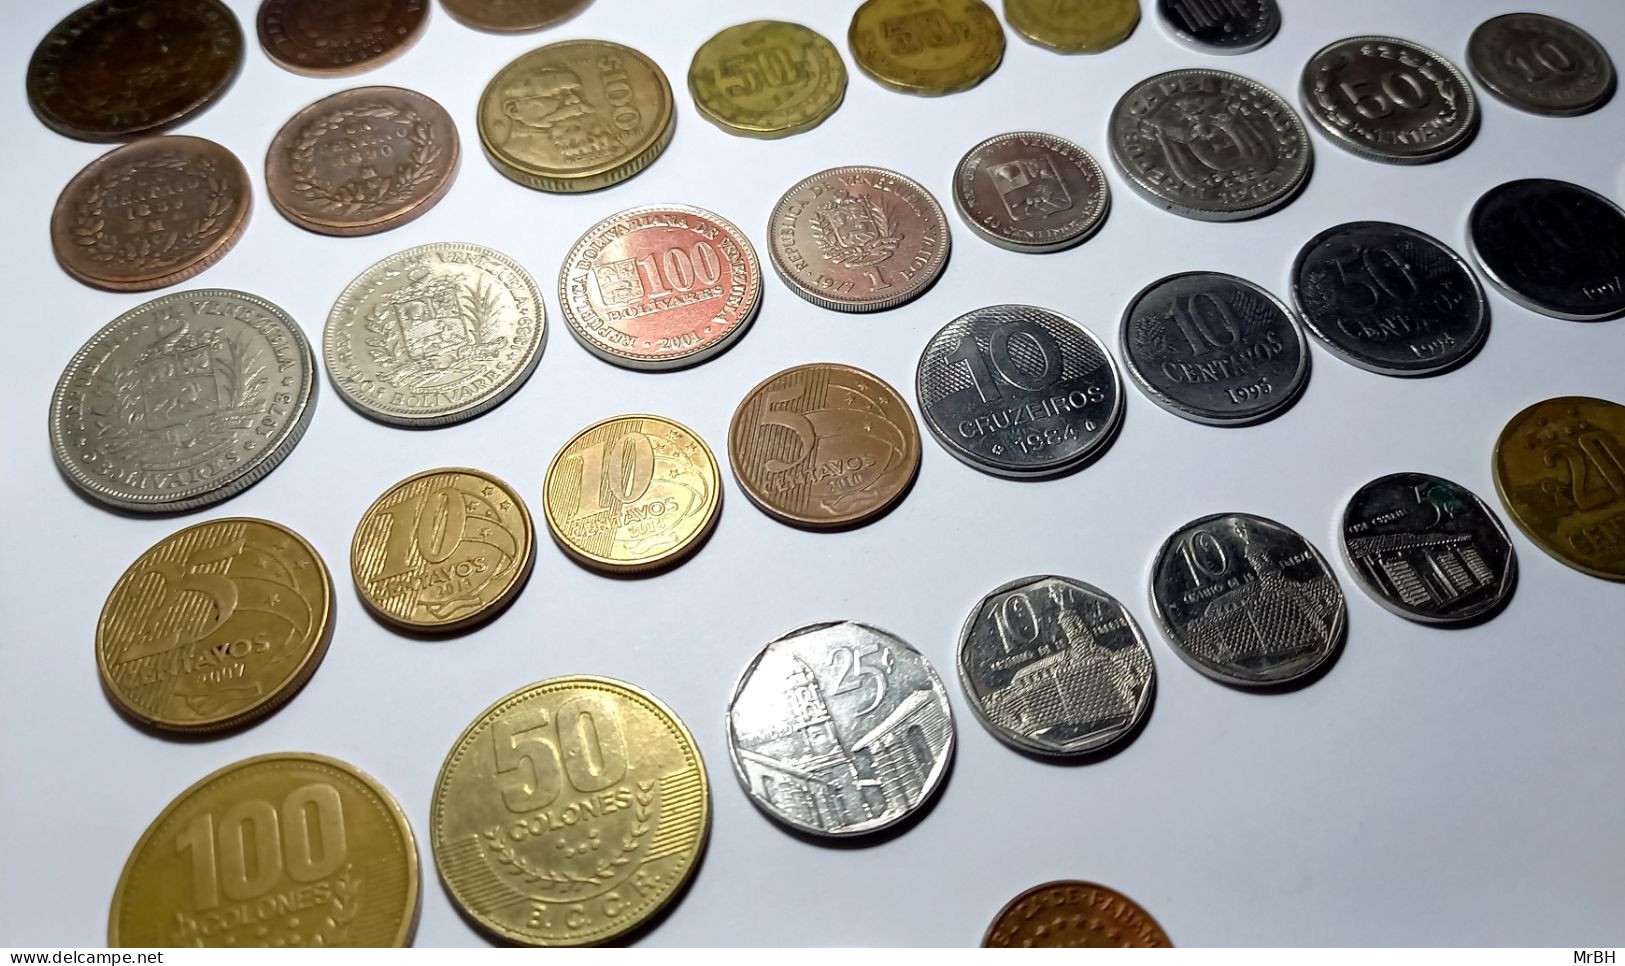 Amérique du Sud, Caraïbes, 1889 à nos jours (59 monnaies)